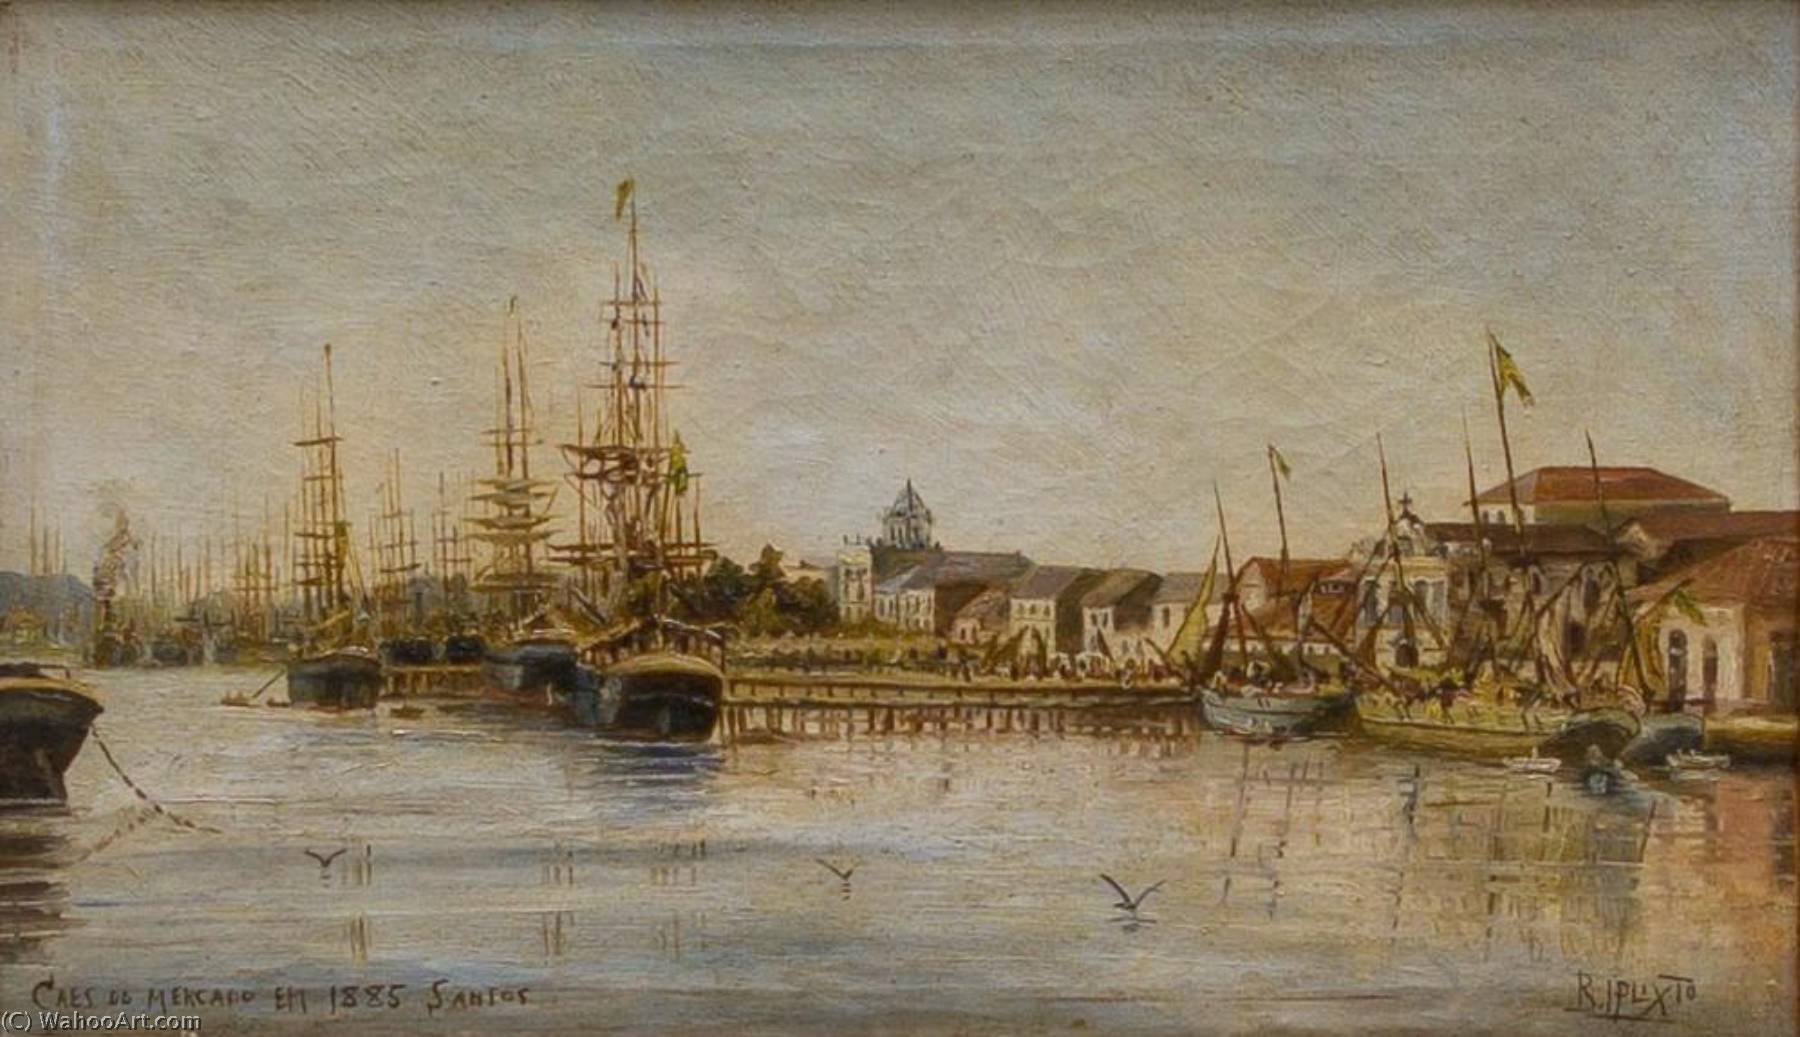 WikiOO.org - Encyclopedia of Fine Arts - Malba, Artwork Benedito Calixto - English Market Quay in 1885 Português Cais do Mercado em 1885